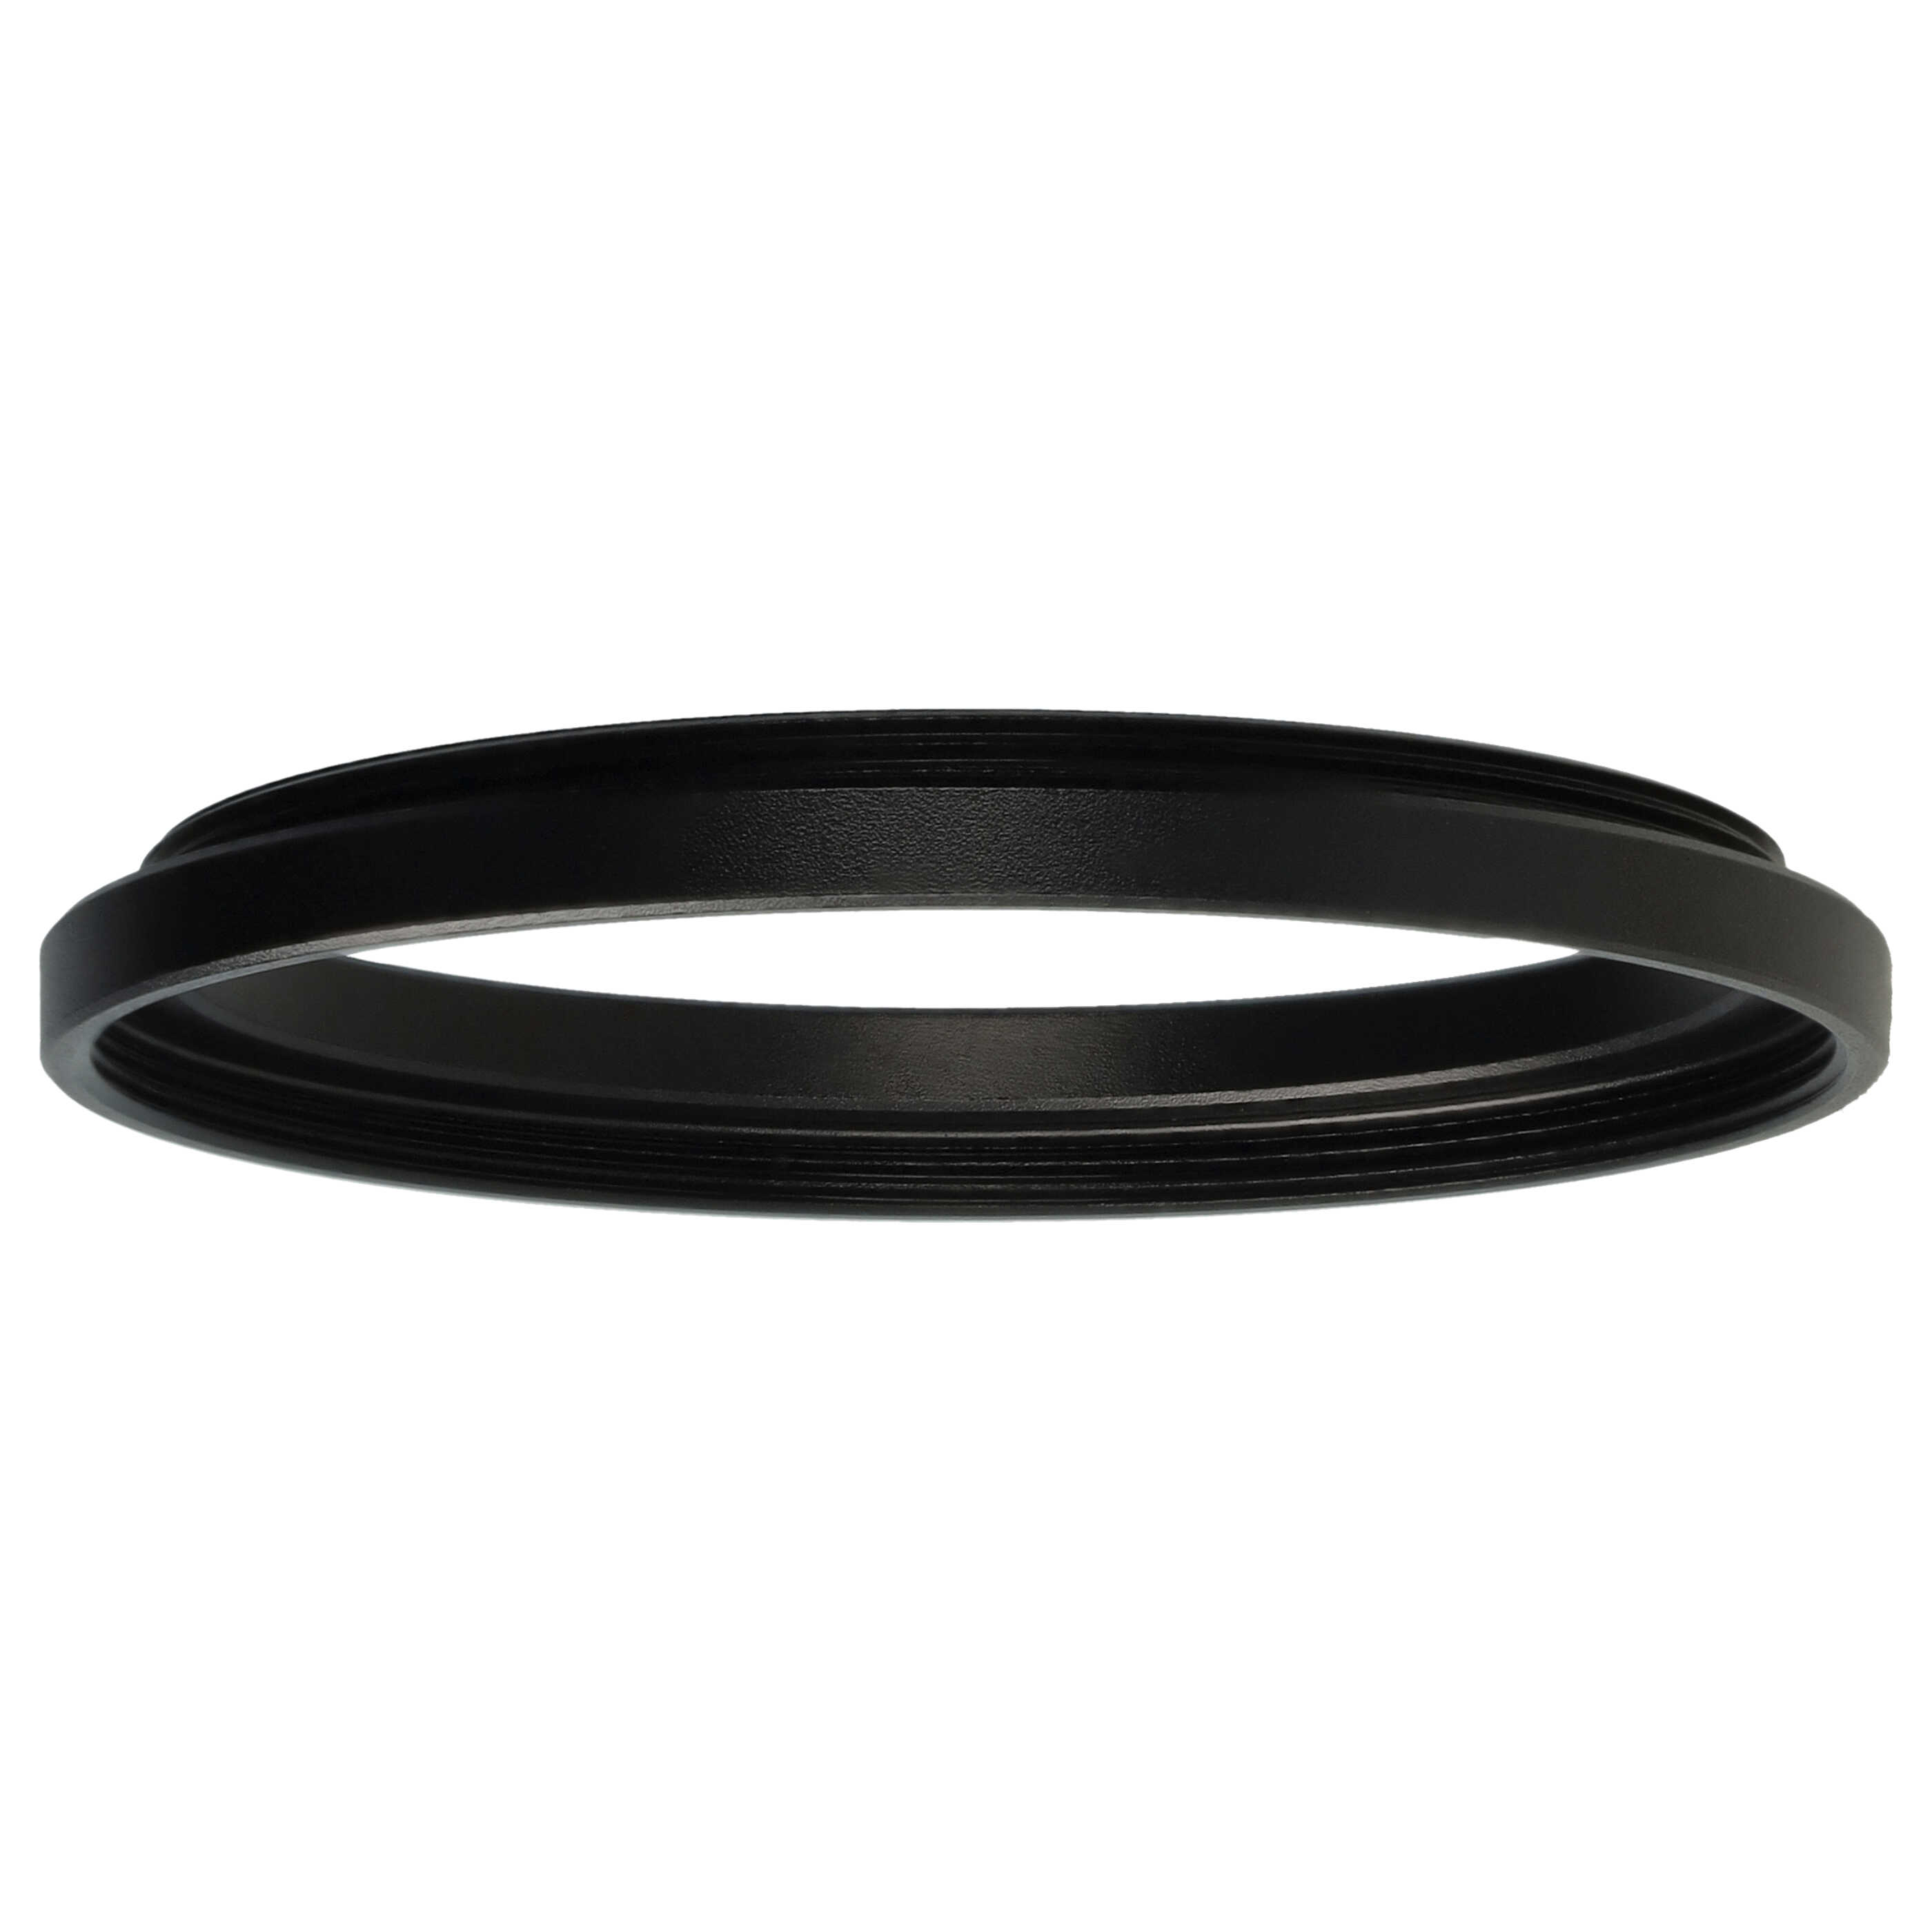 Step-Up-Ring Adapter 49 mm auf 52 mm passend für diverse Kamera-Objektive - Filteradapter